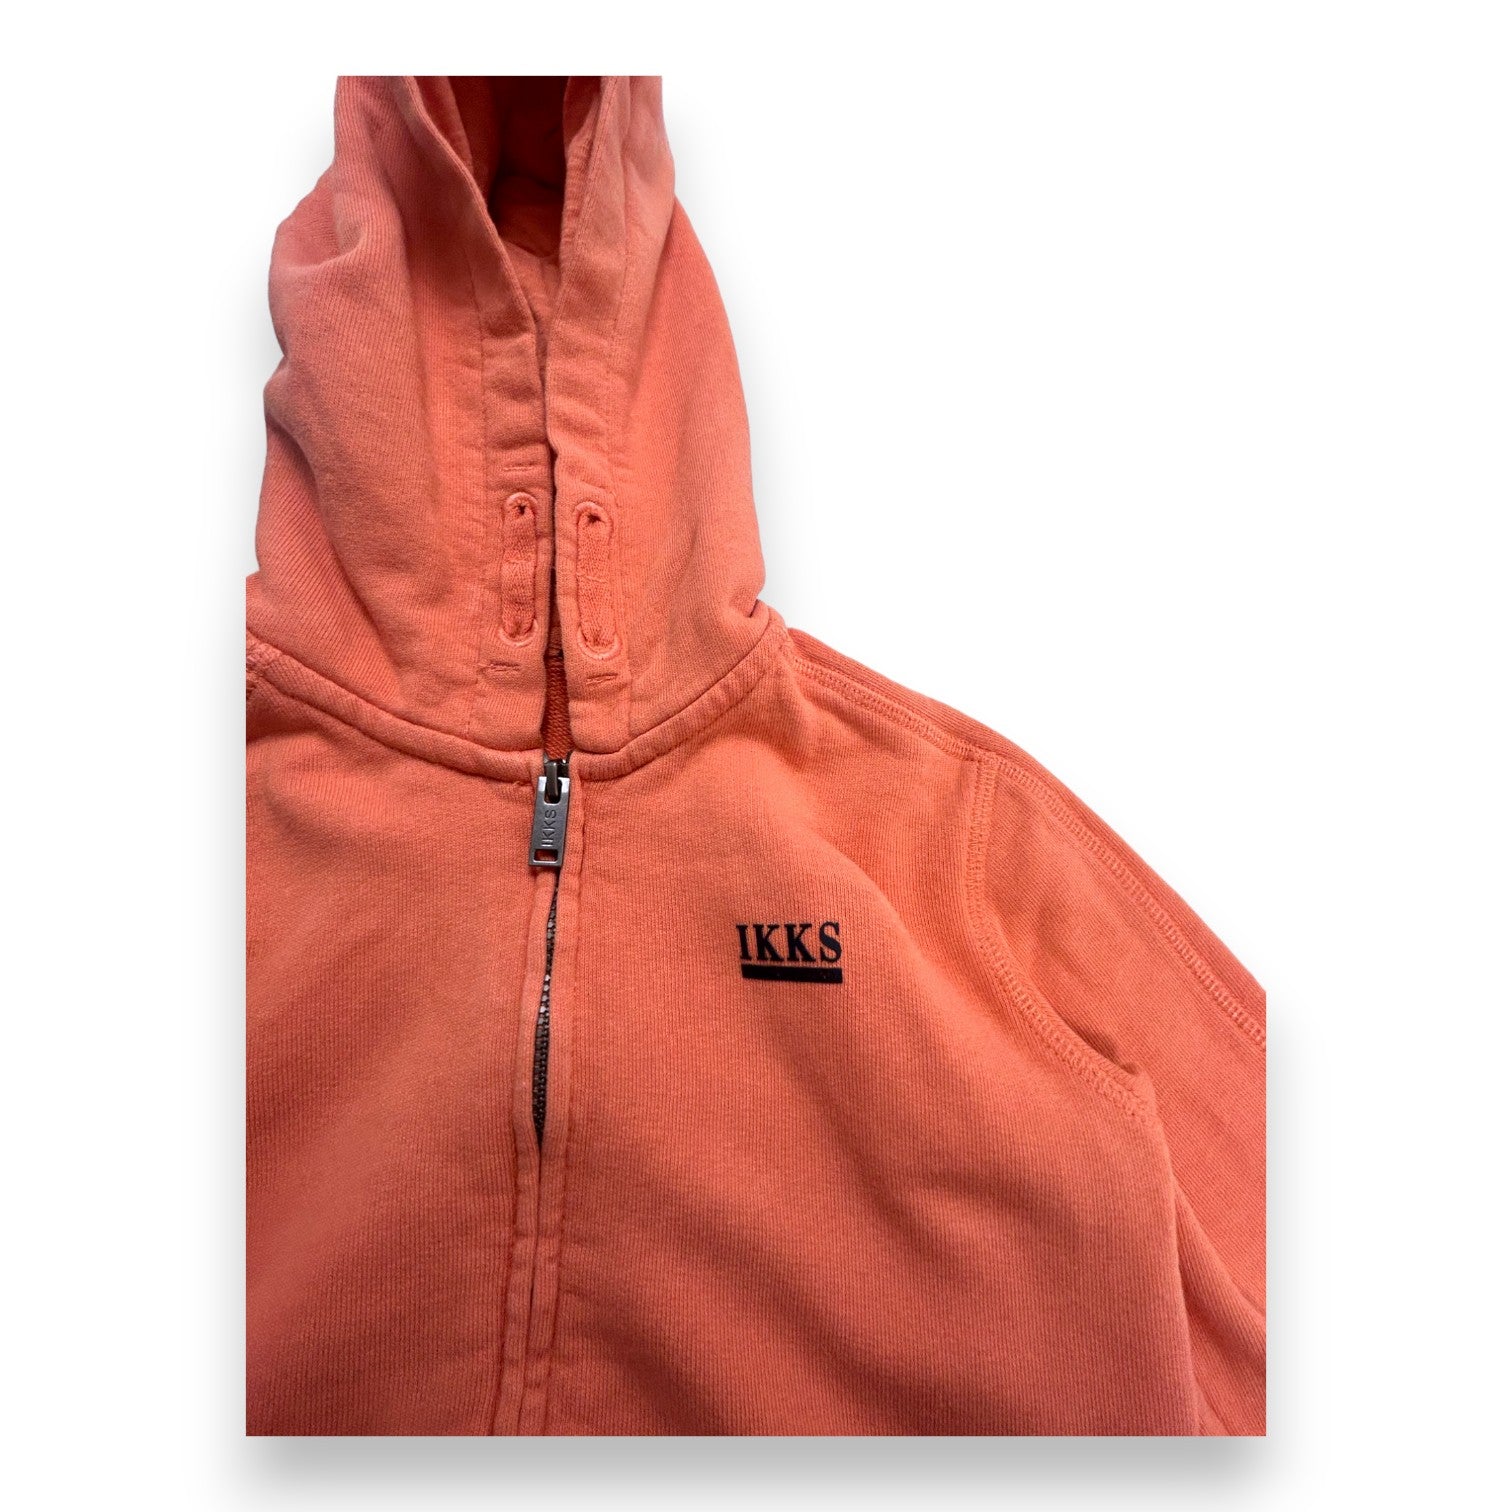 IKKS - Veste orange à zip - 5 ans